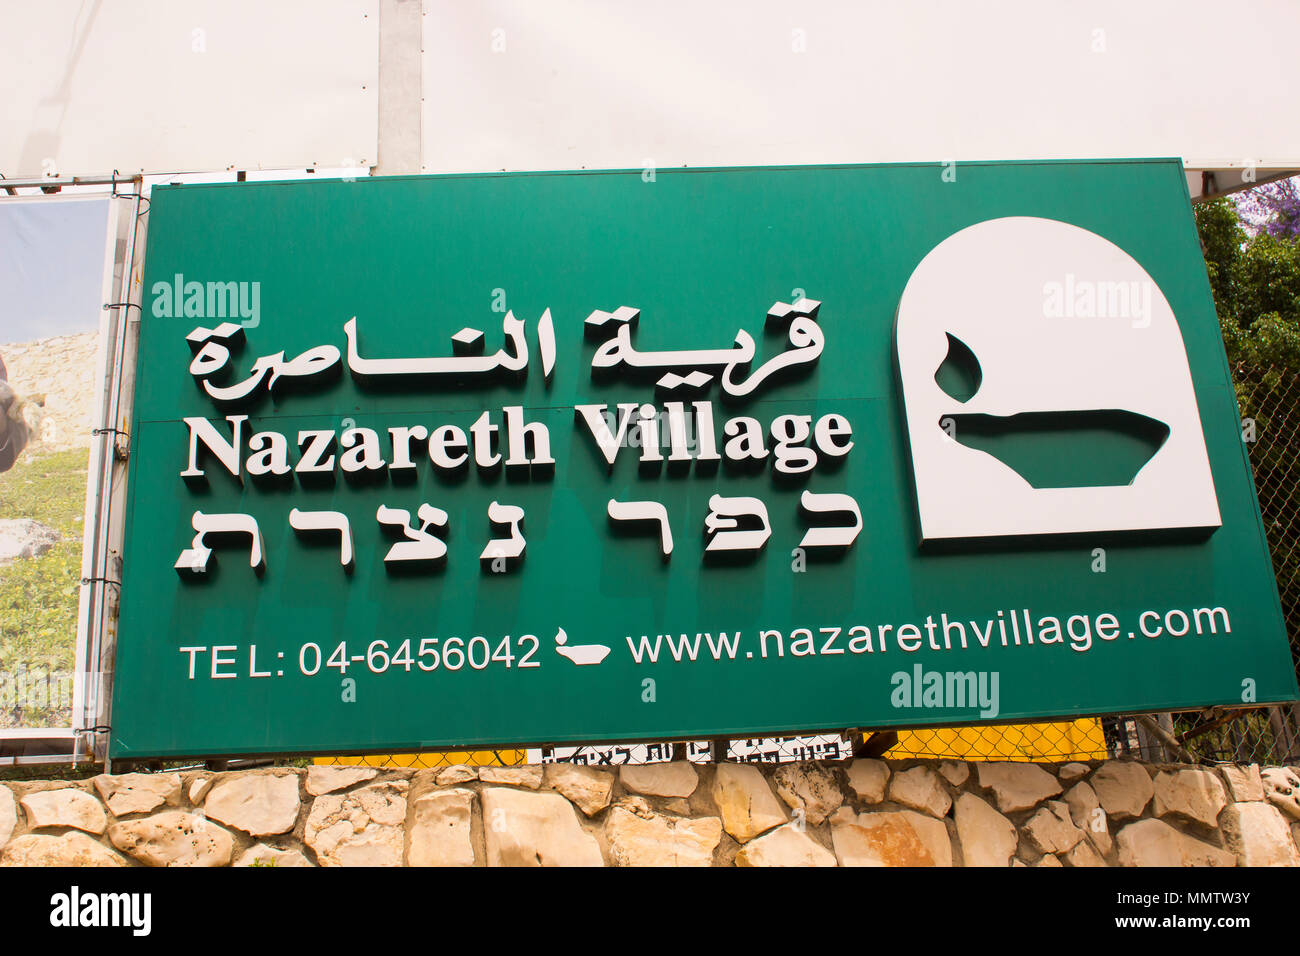 Un panneau publicitaire de la Nazareth expérience de village pour les touristes au site d'excavation de l'ancien village de Nazareth en Israël Banque D'Images